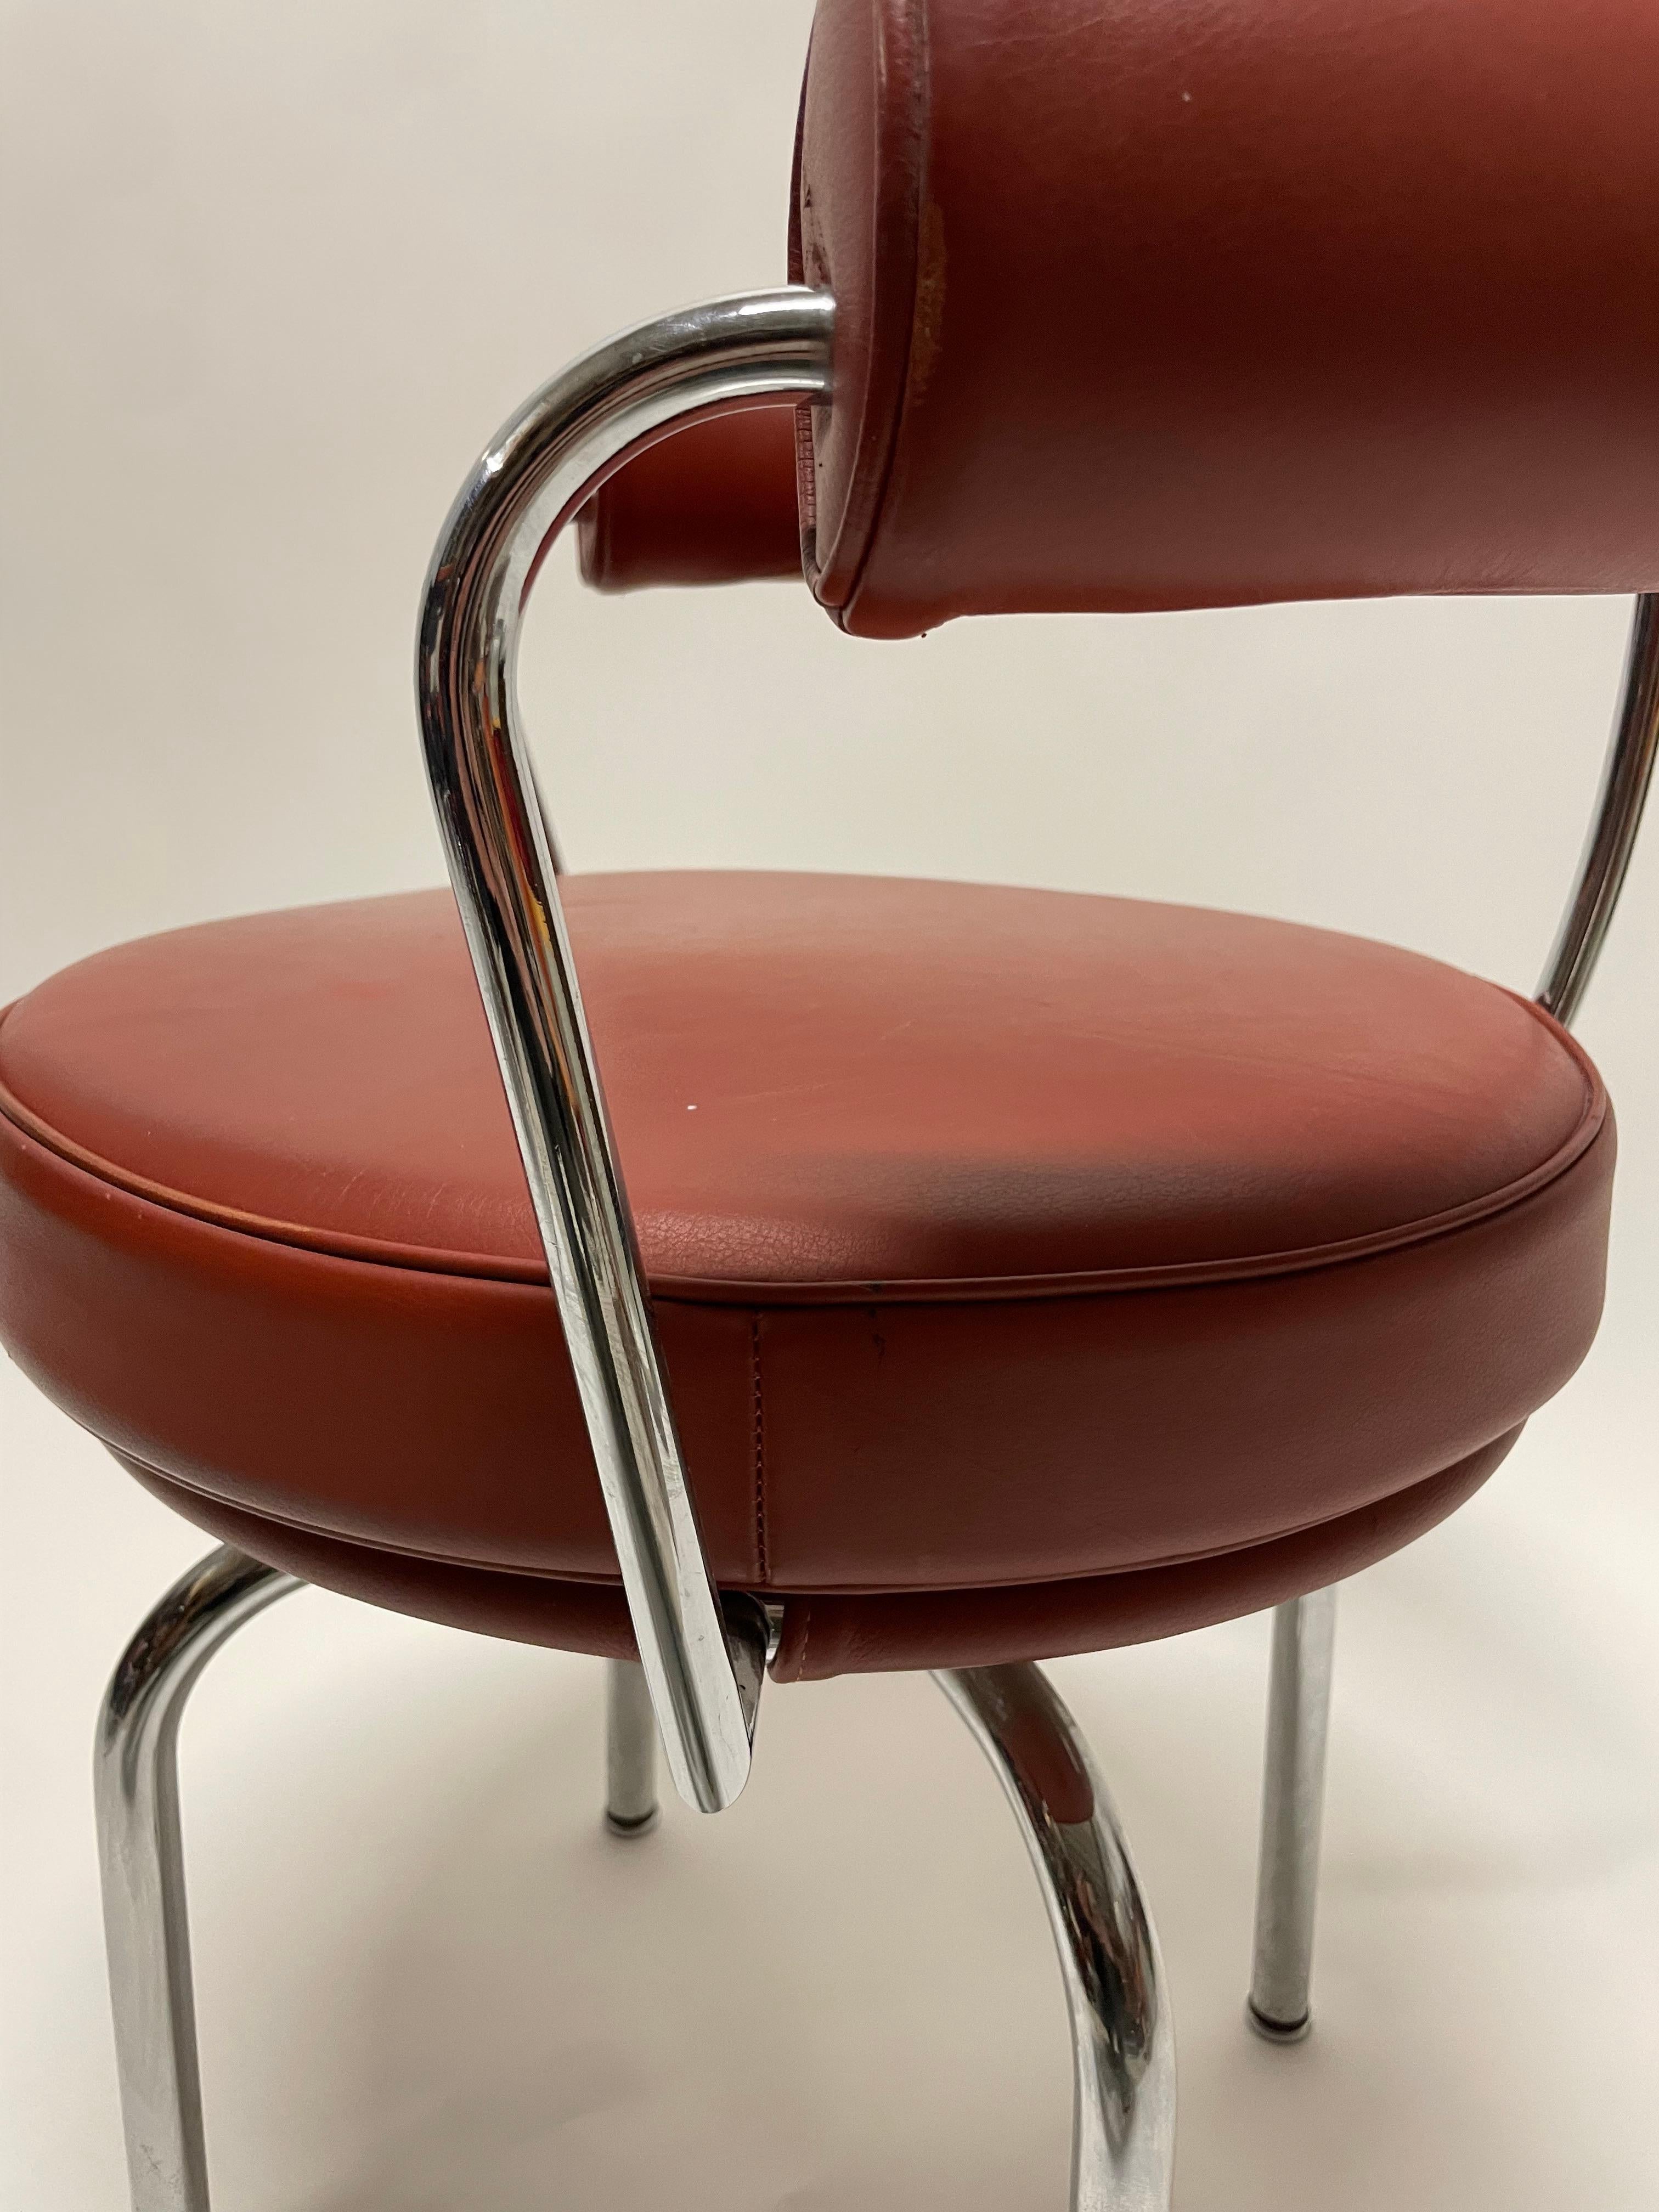 Authentique chaise Cassina en bordeaux. 

Le cuir présente quelques signes d'âge, mais dans l'ensemble, il s'agit toujours d'une très belle chaise fonctionnelle. 